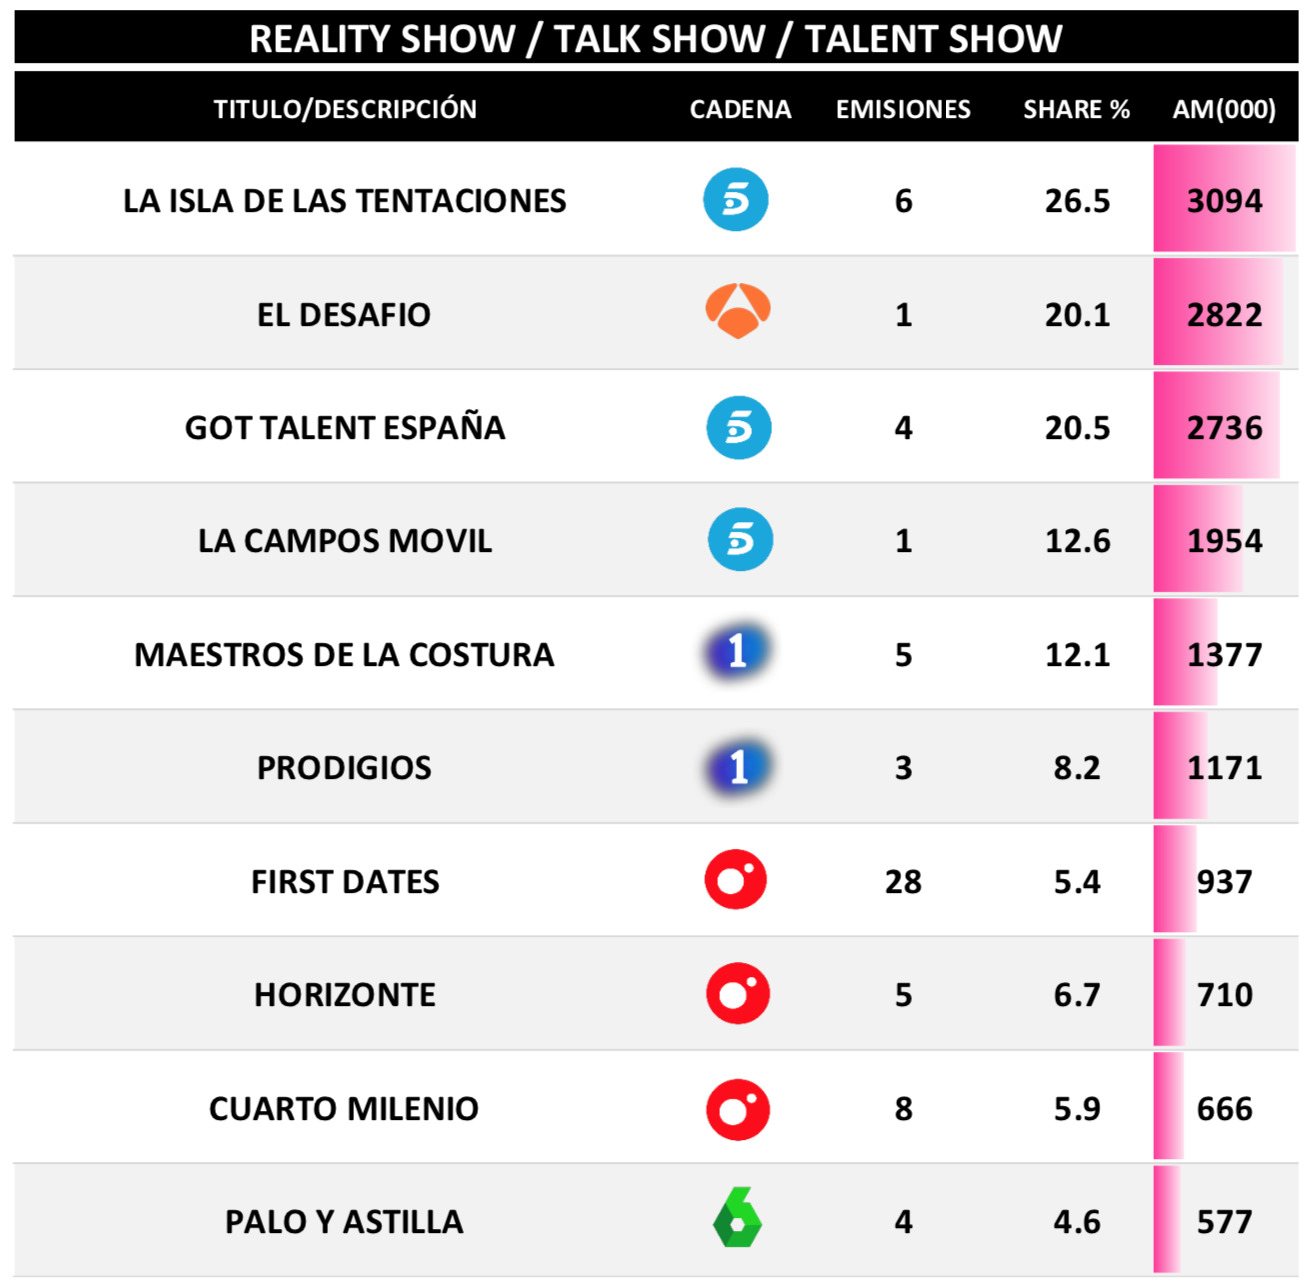 Realities, talents y talk shows más vistos